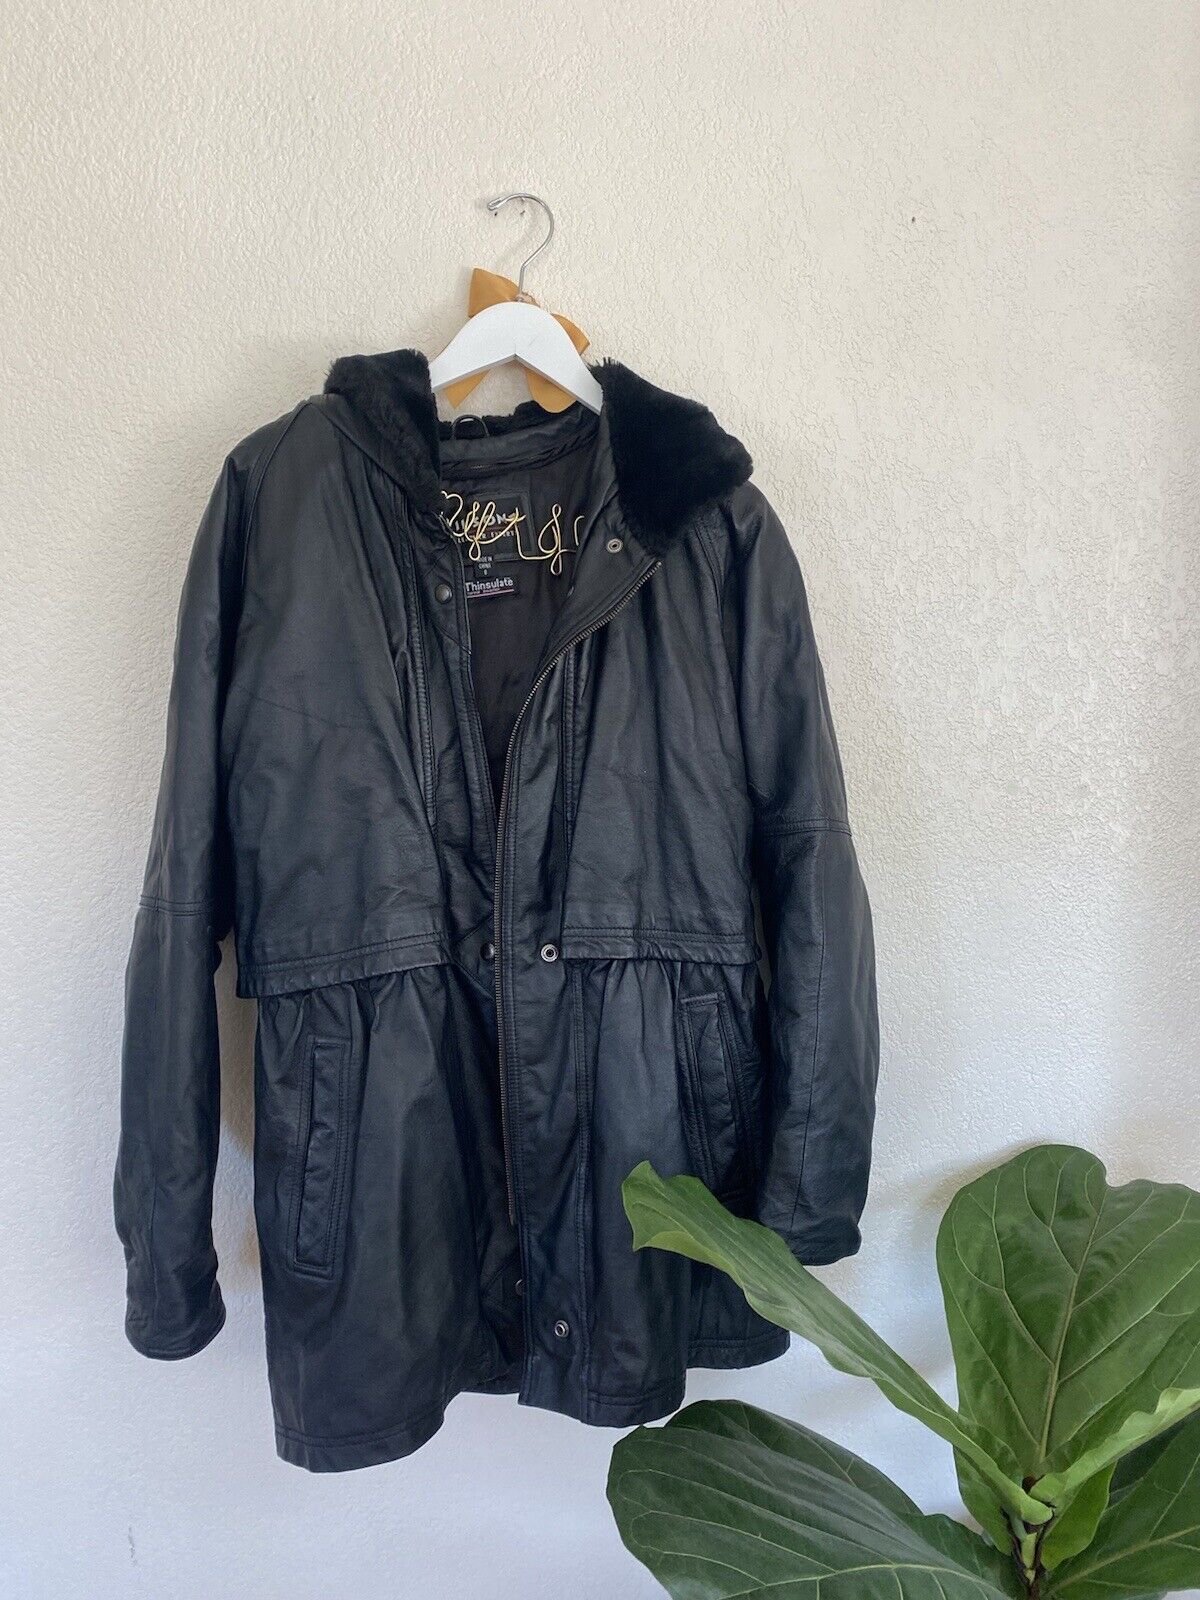 Heavy Duty Black Leather Coat - Wilson’s - Women’s Small